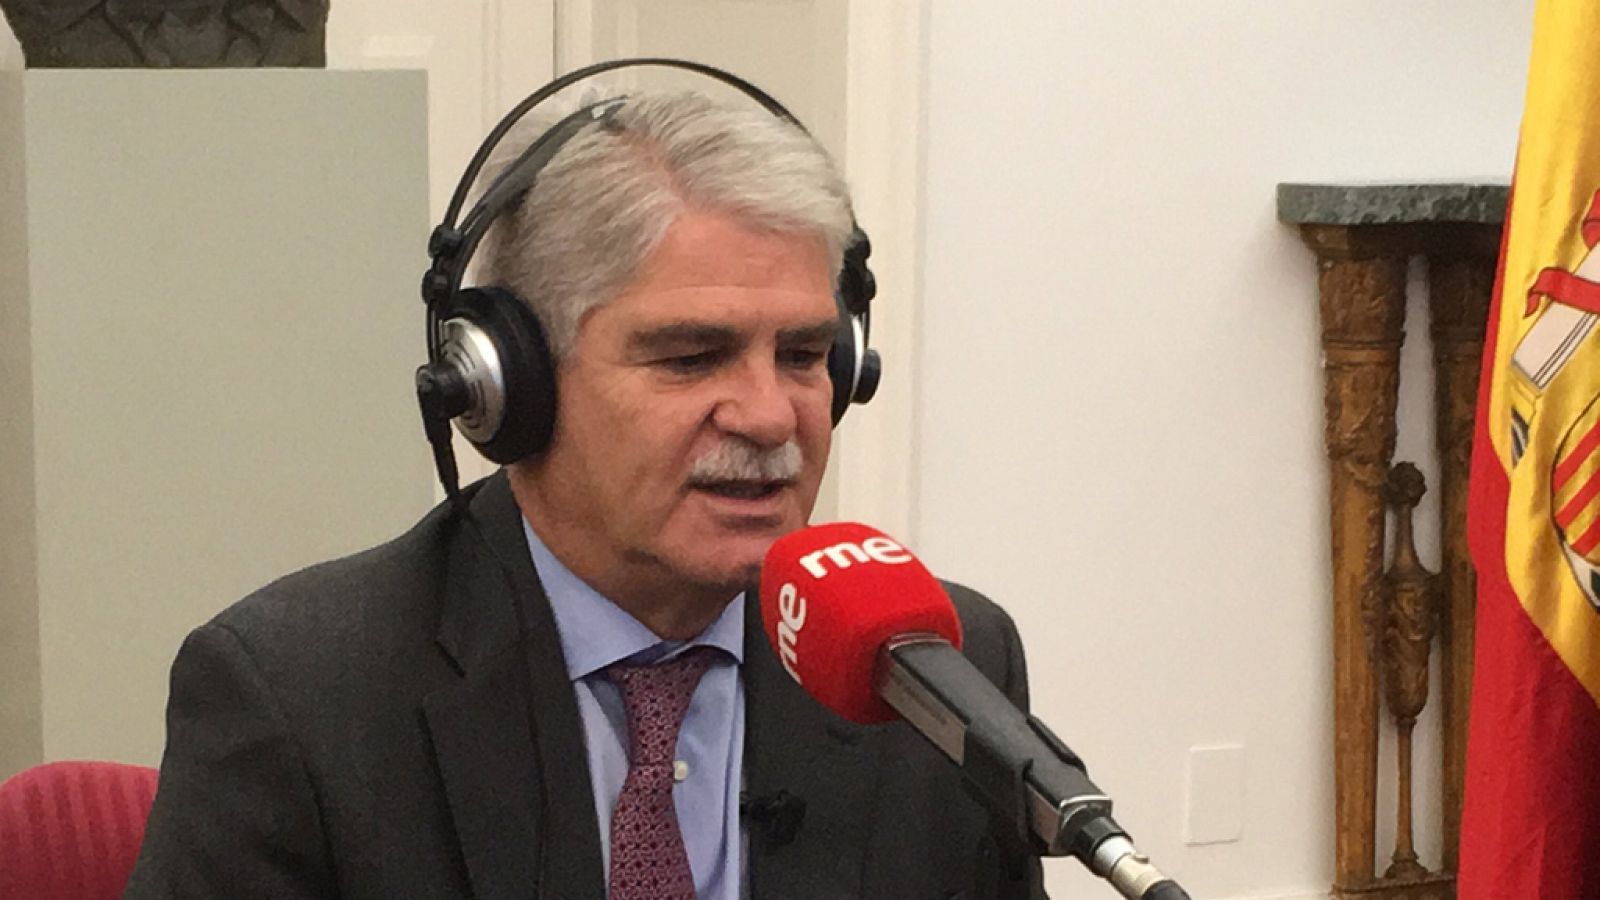 Las mañanas de RNE - Alfonso Dastis, ministro de Exteriores: "Esperamos profundizar y consolidar las relaciones con EE.UU." - Escuchar ahora